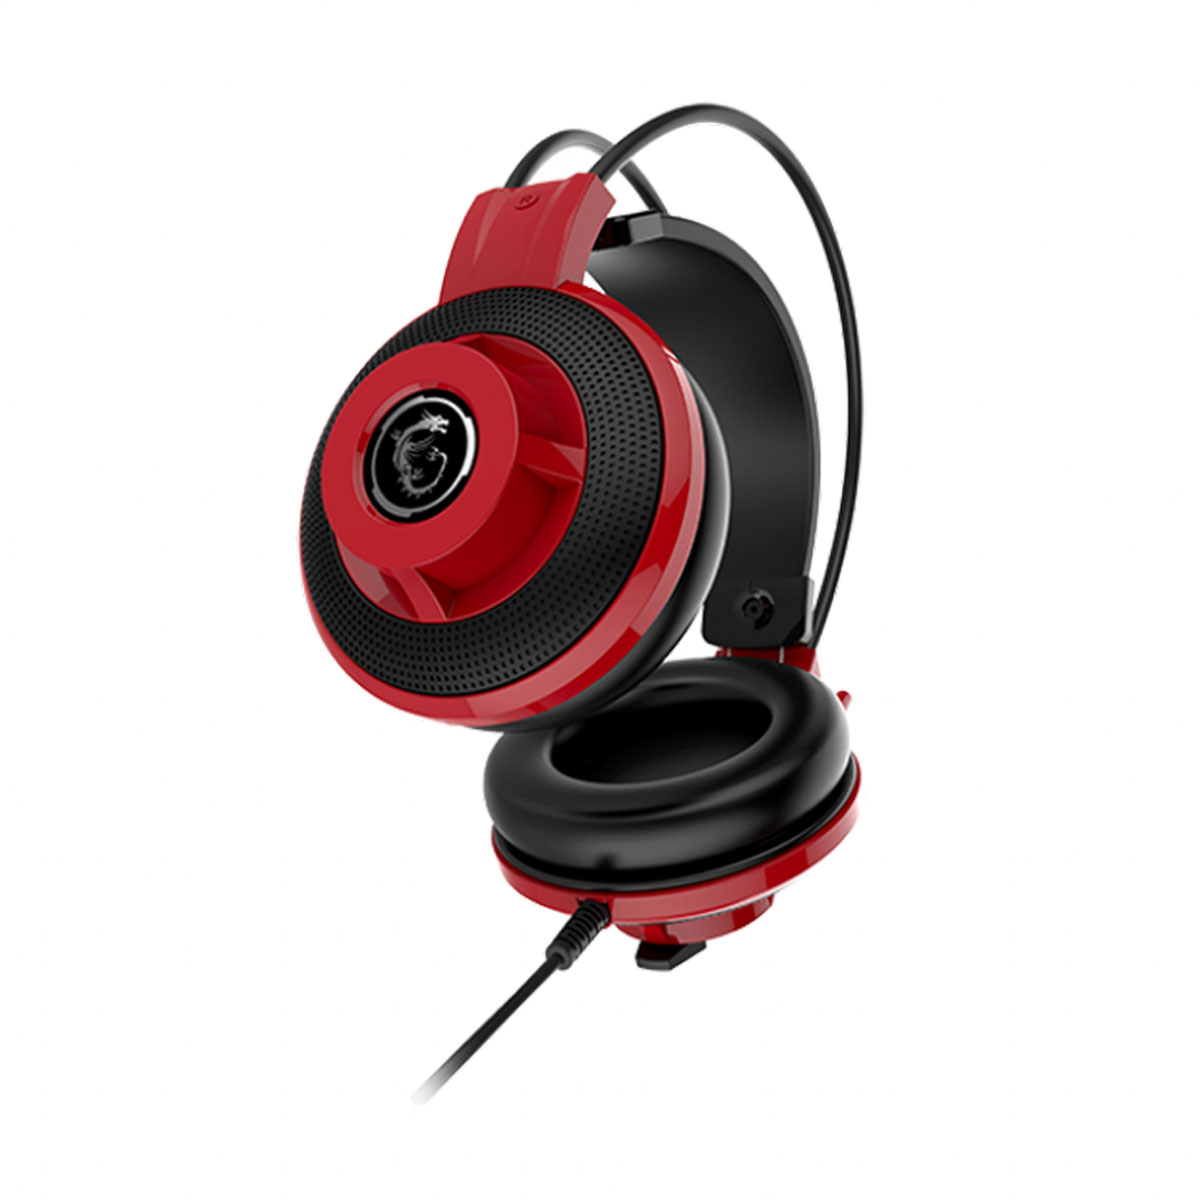 Audífonos gamer Genius GX Gaming con vibración HS-G600V negro y rojo -  Tecnología en Línea